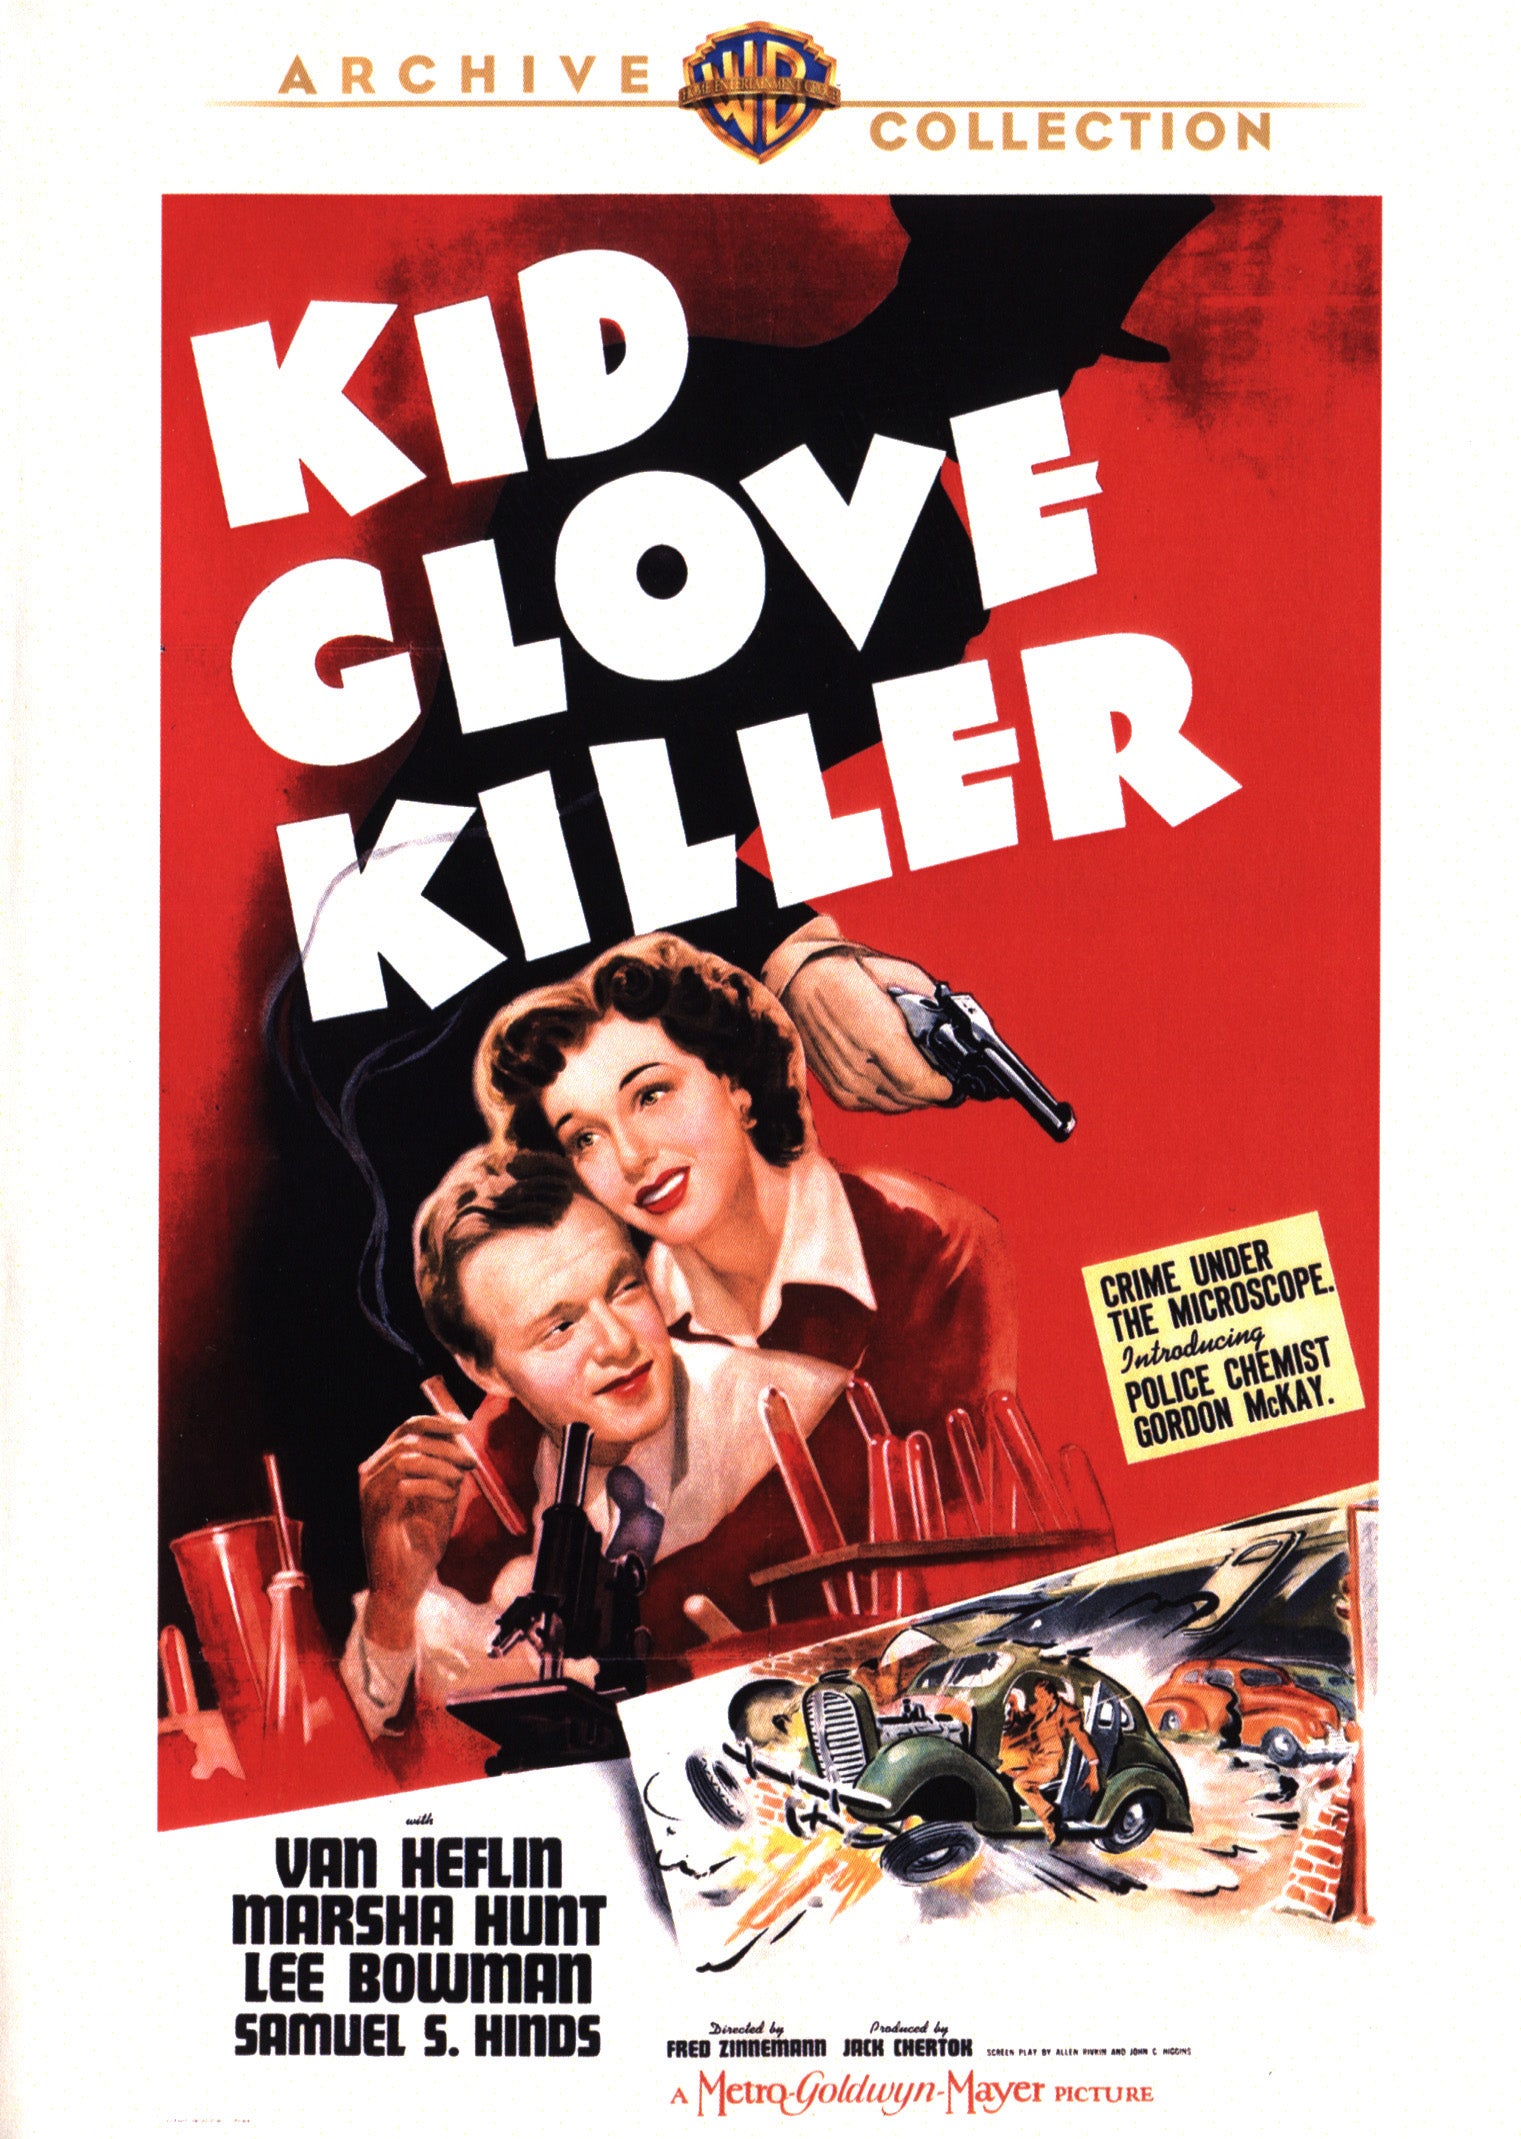 Kid Glove Killer cover art